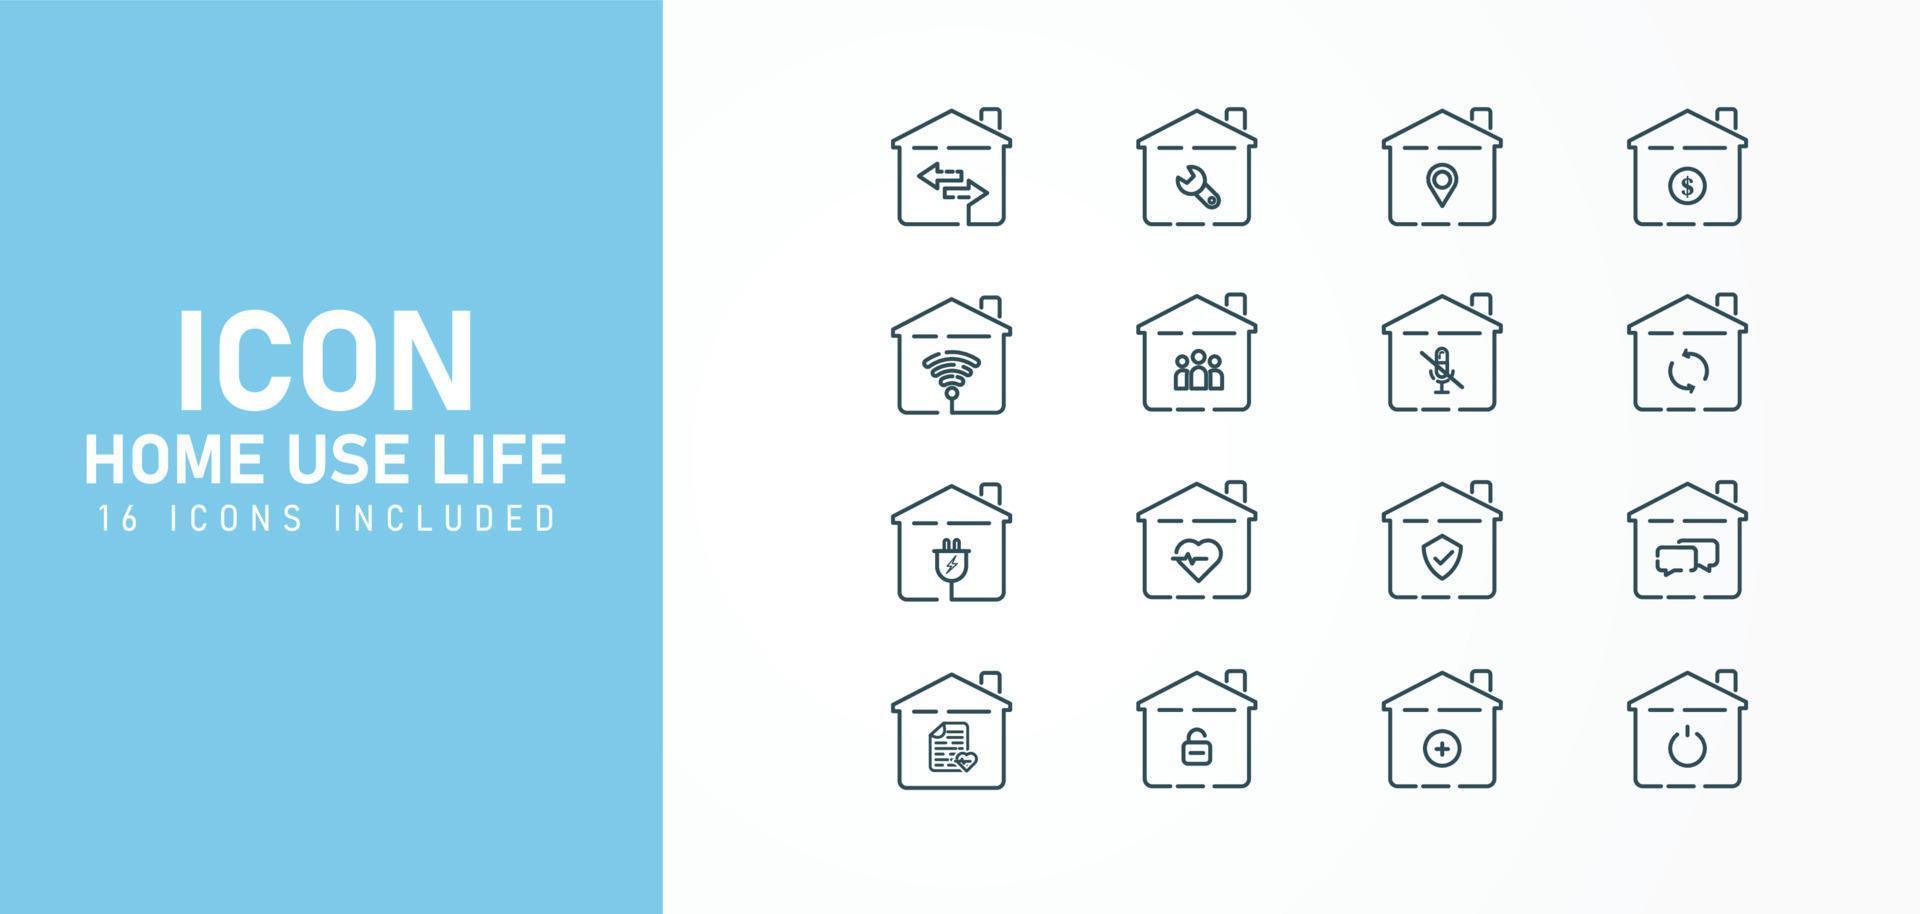 conjunto de iconos de líneas planas para aplicaciones domésticas como wi-fi, internet, energía, silencio, mensajes, desbloqueo, etc. Ilustración de vector de renovación de edificios de viviendas